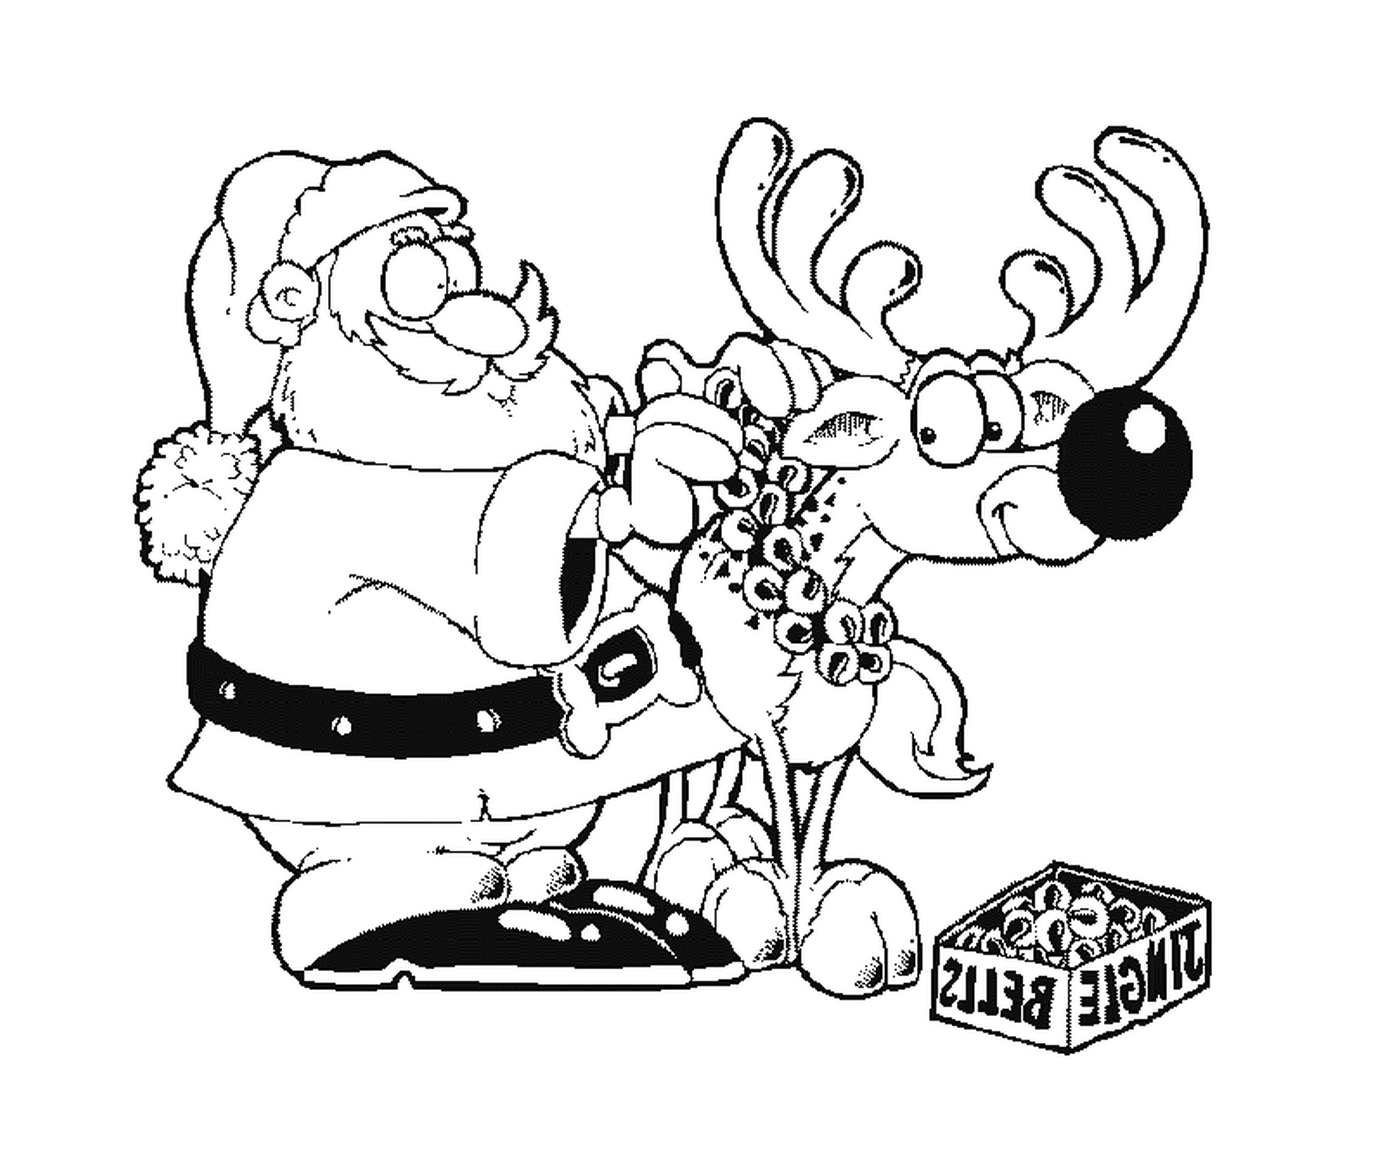  Санта Клаус и олень 